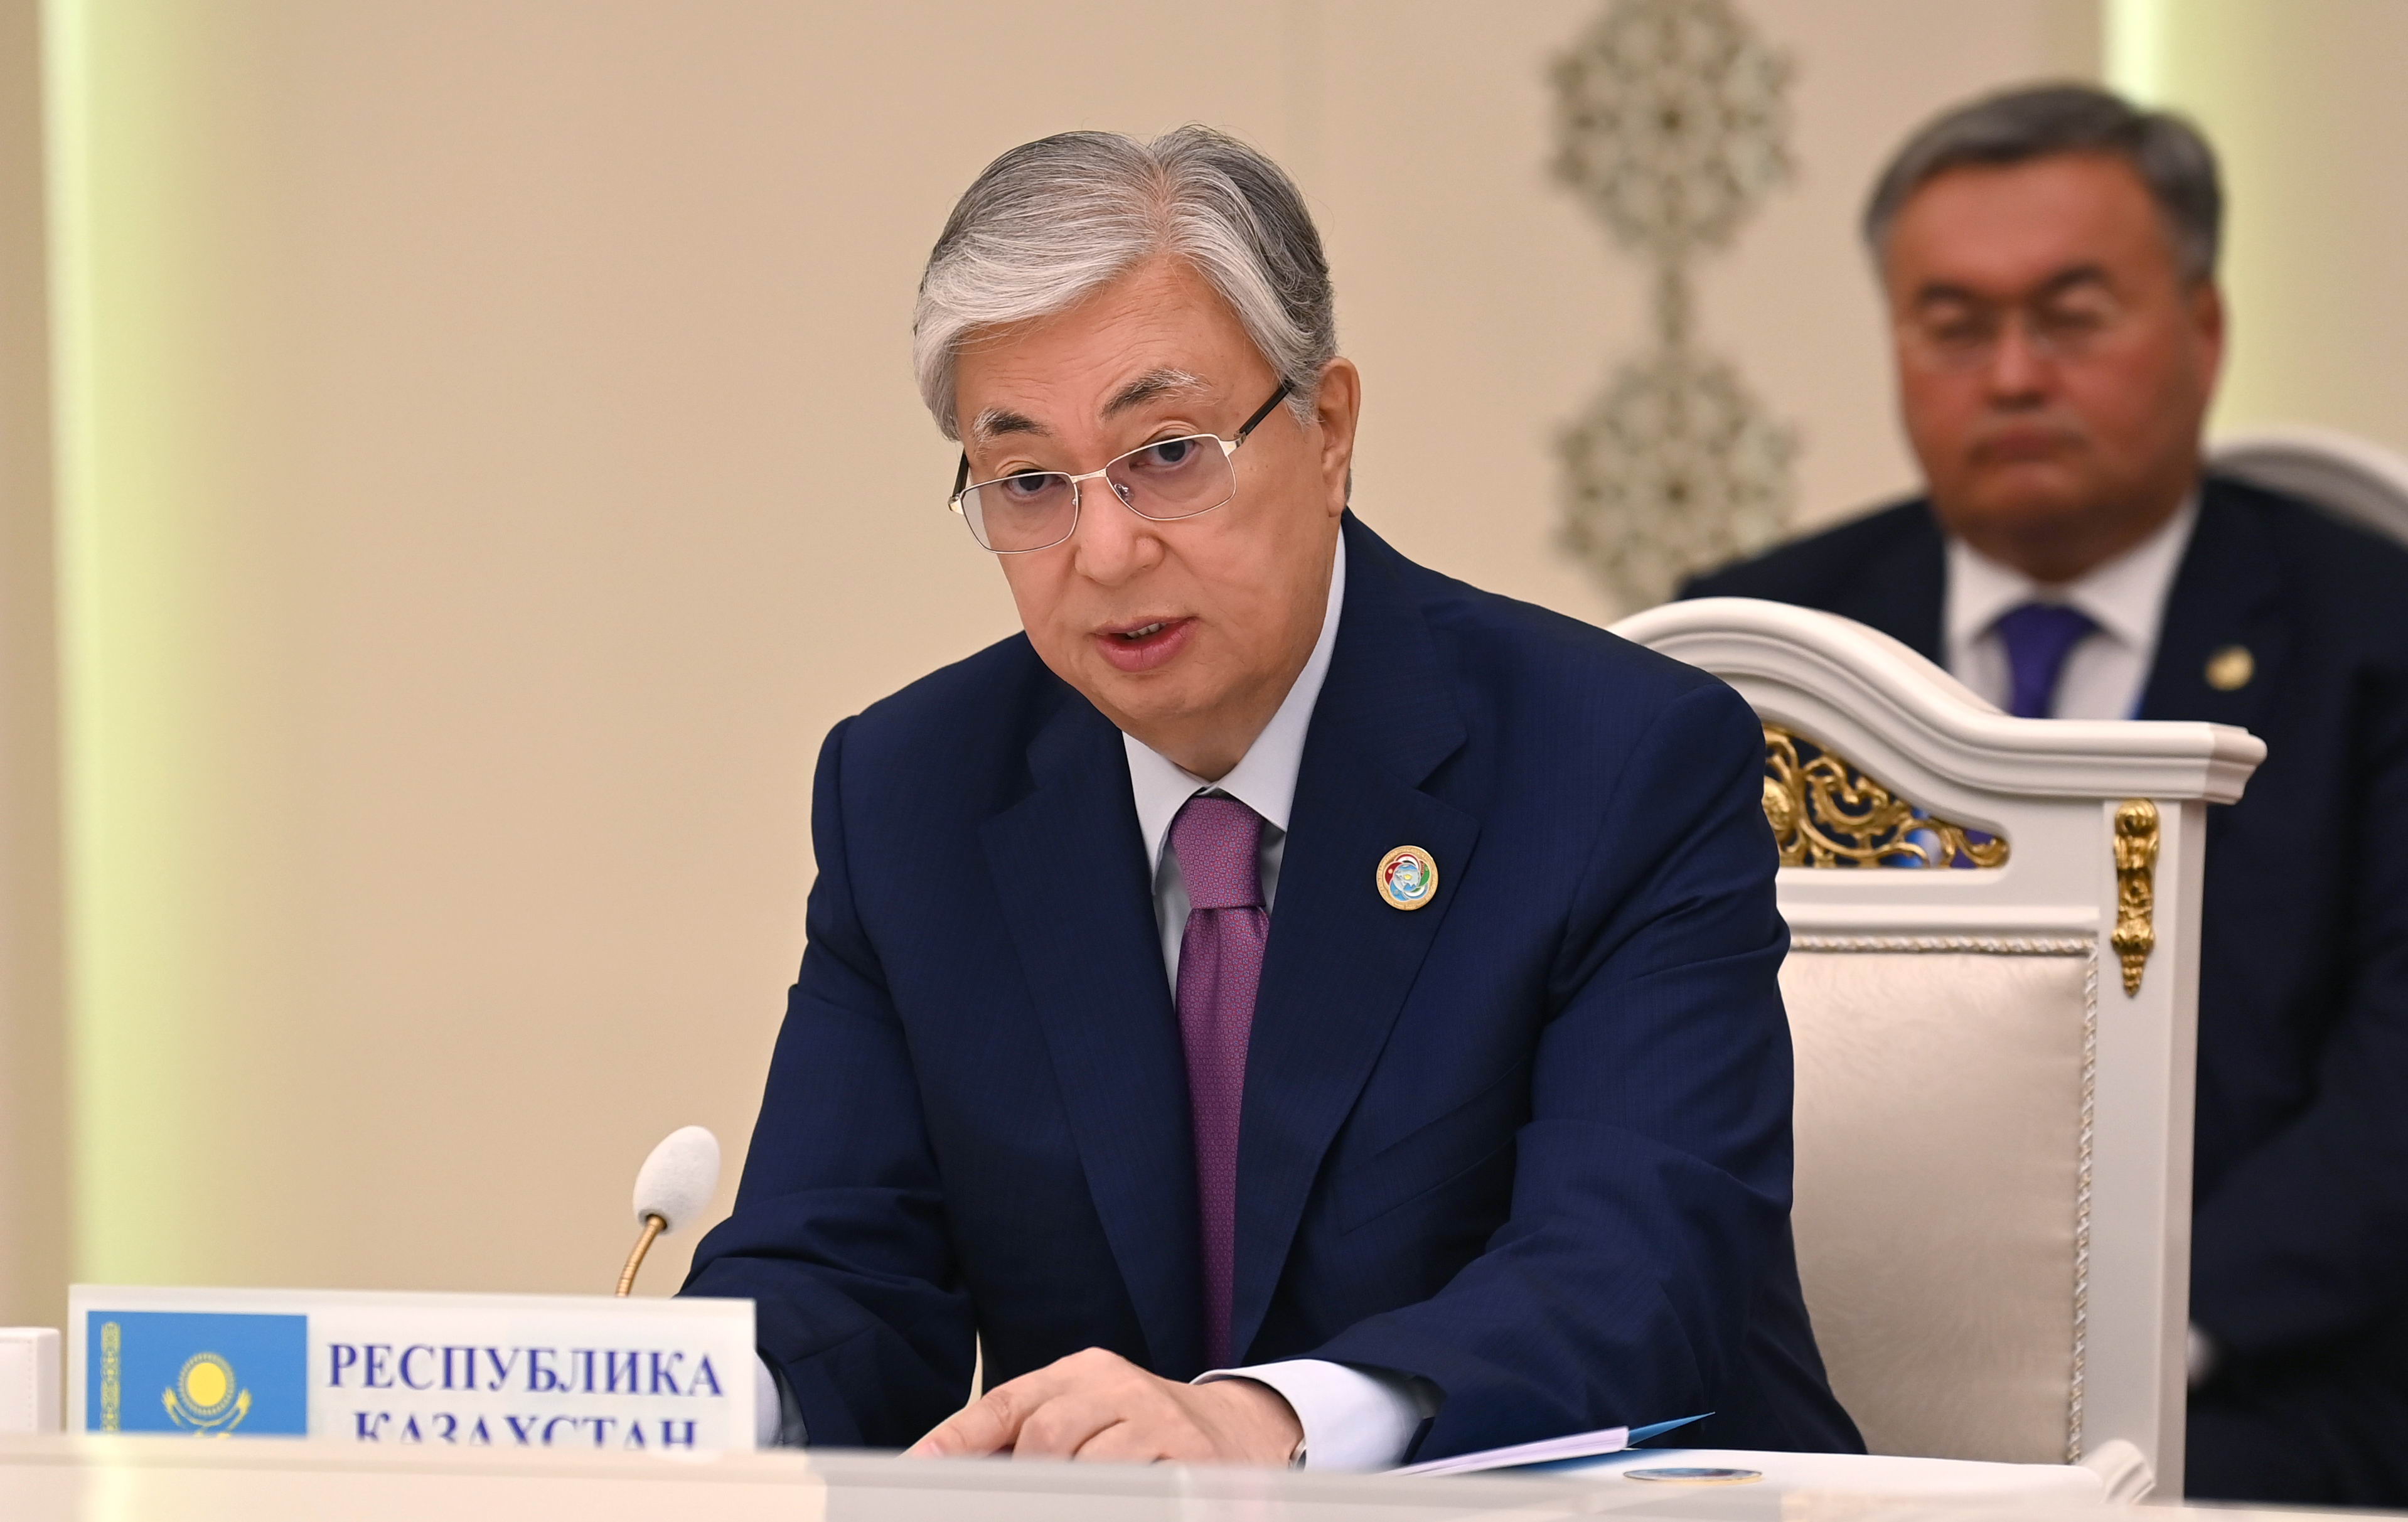 Токаев: У нас до сих пор нет четкой позиции по поводу развития моногородов